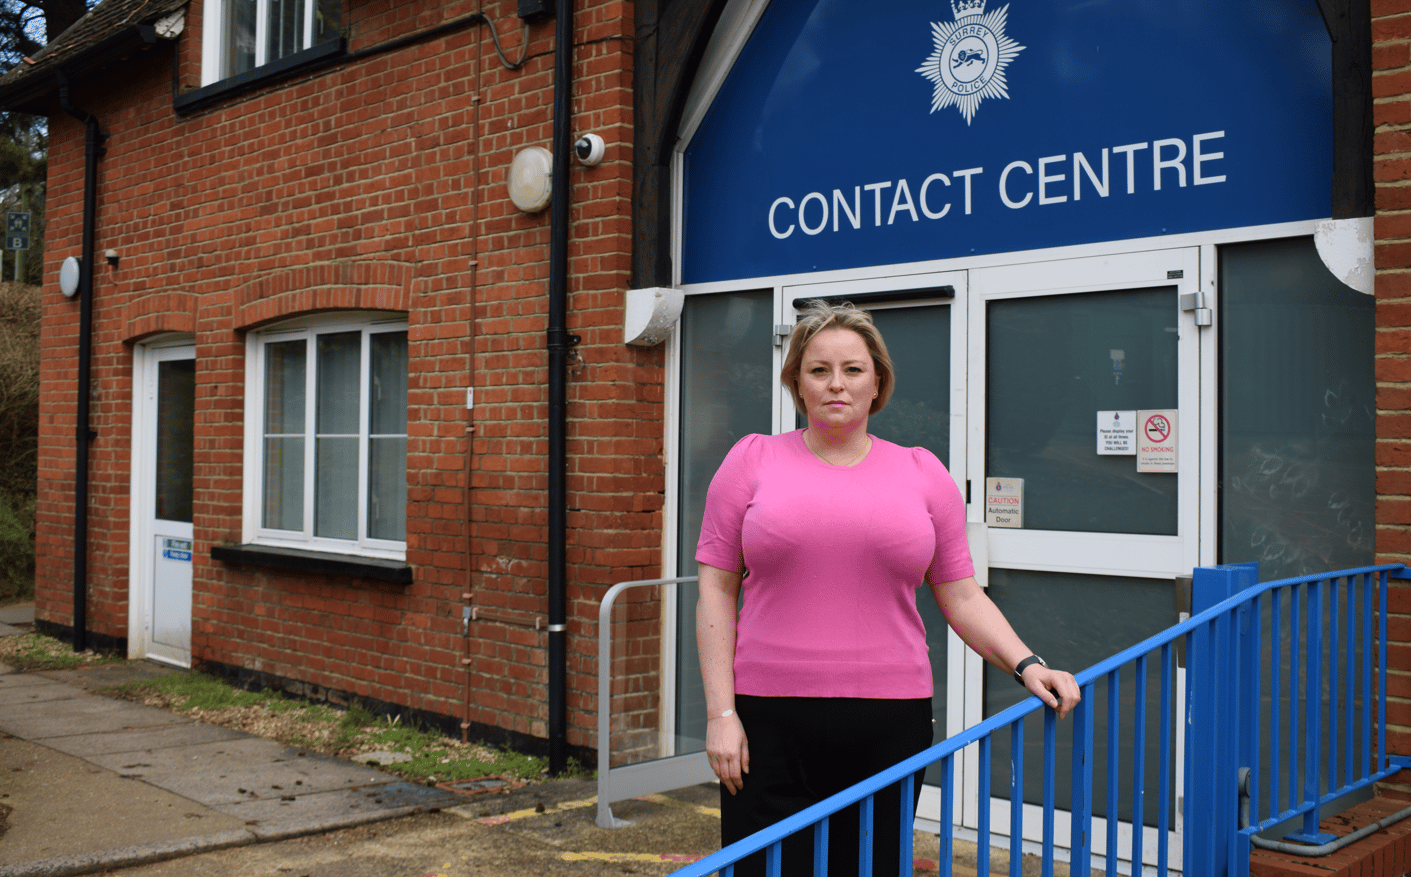 Comisarul de poliție și criminalitate, Lisa Townsend, în afara centrului de contact al poliției din Surrey